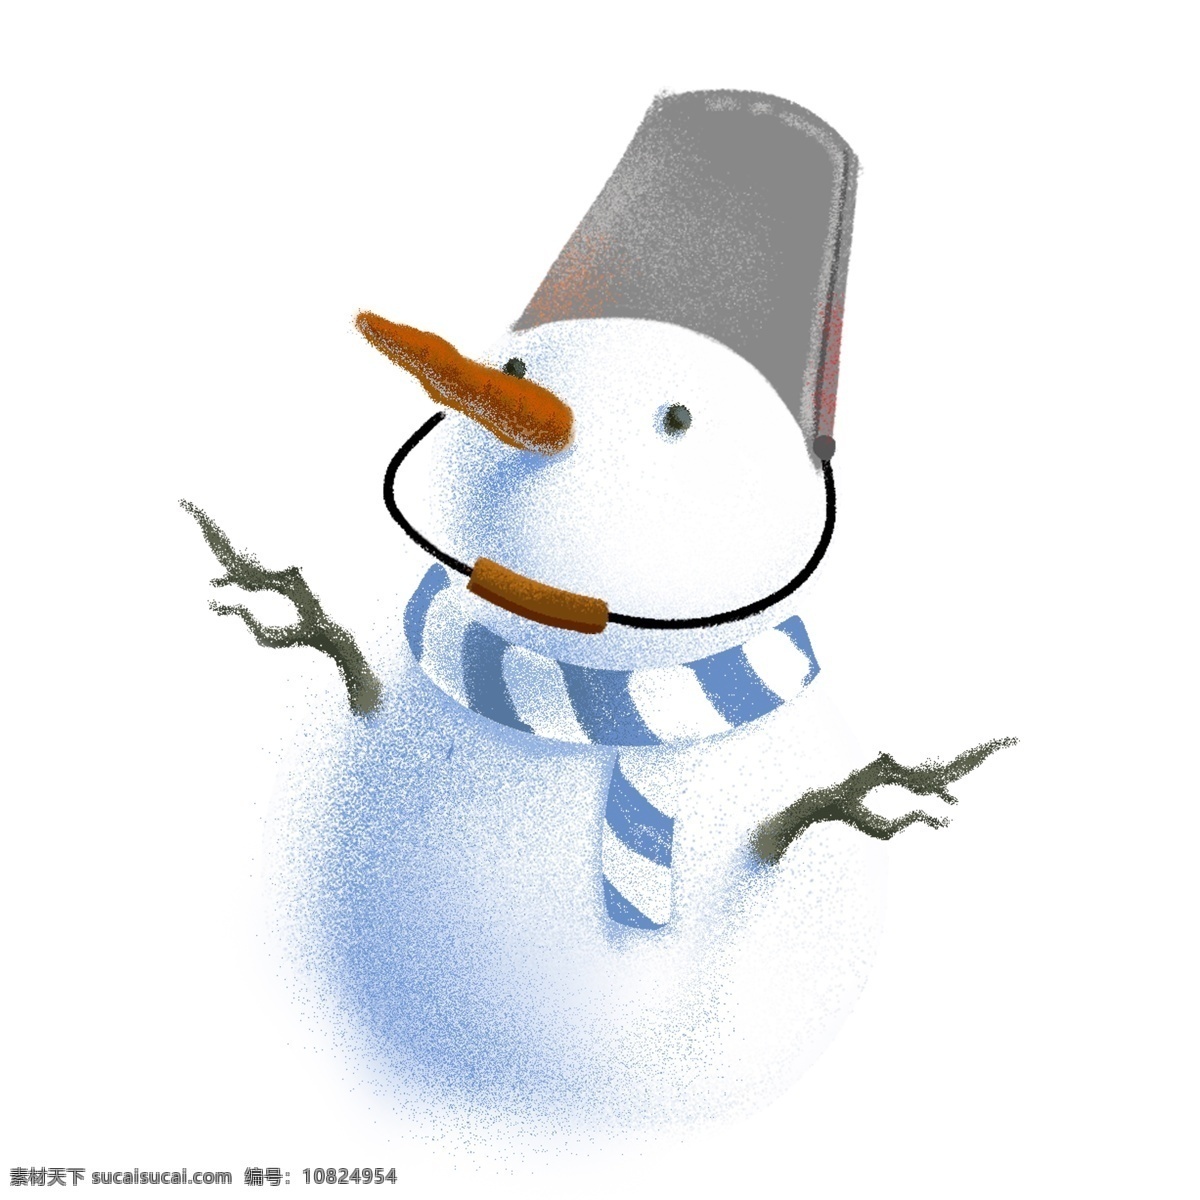 清新 唯美 头 戴 铁桶 雪人 冬季 插画 卡通 蓝色条纹围巾 树杈 胡萝卜 手绘